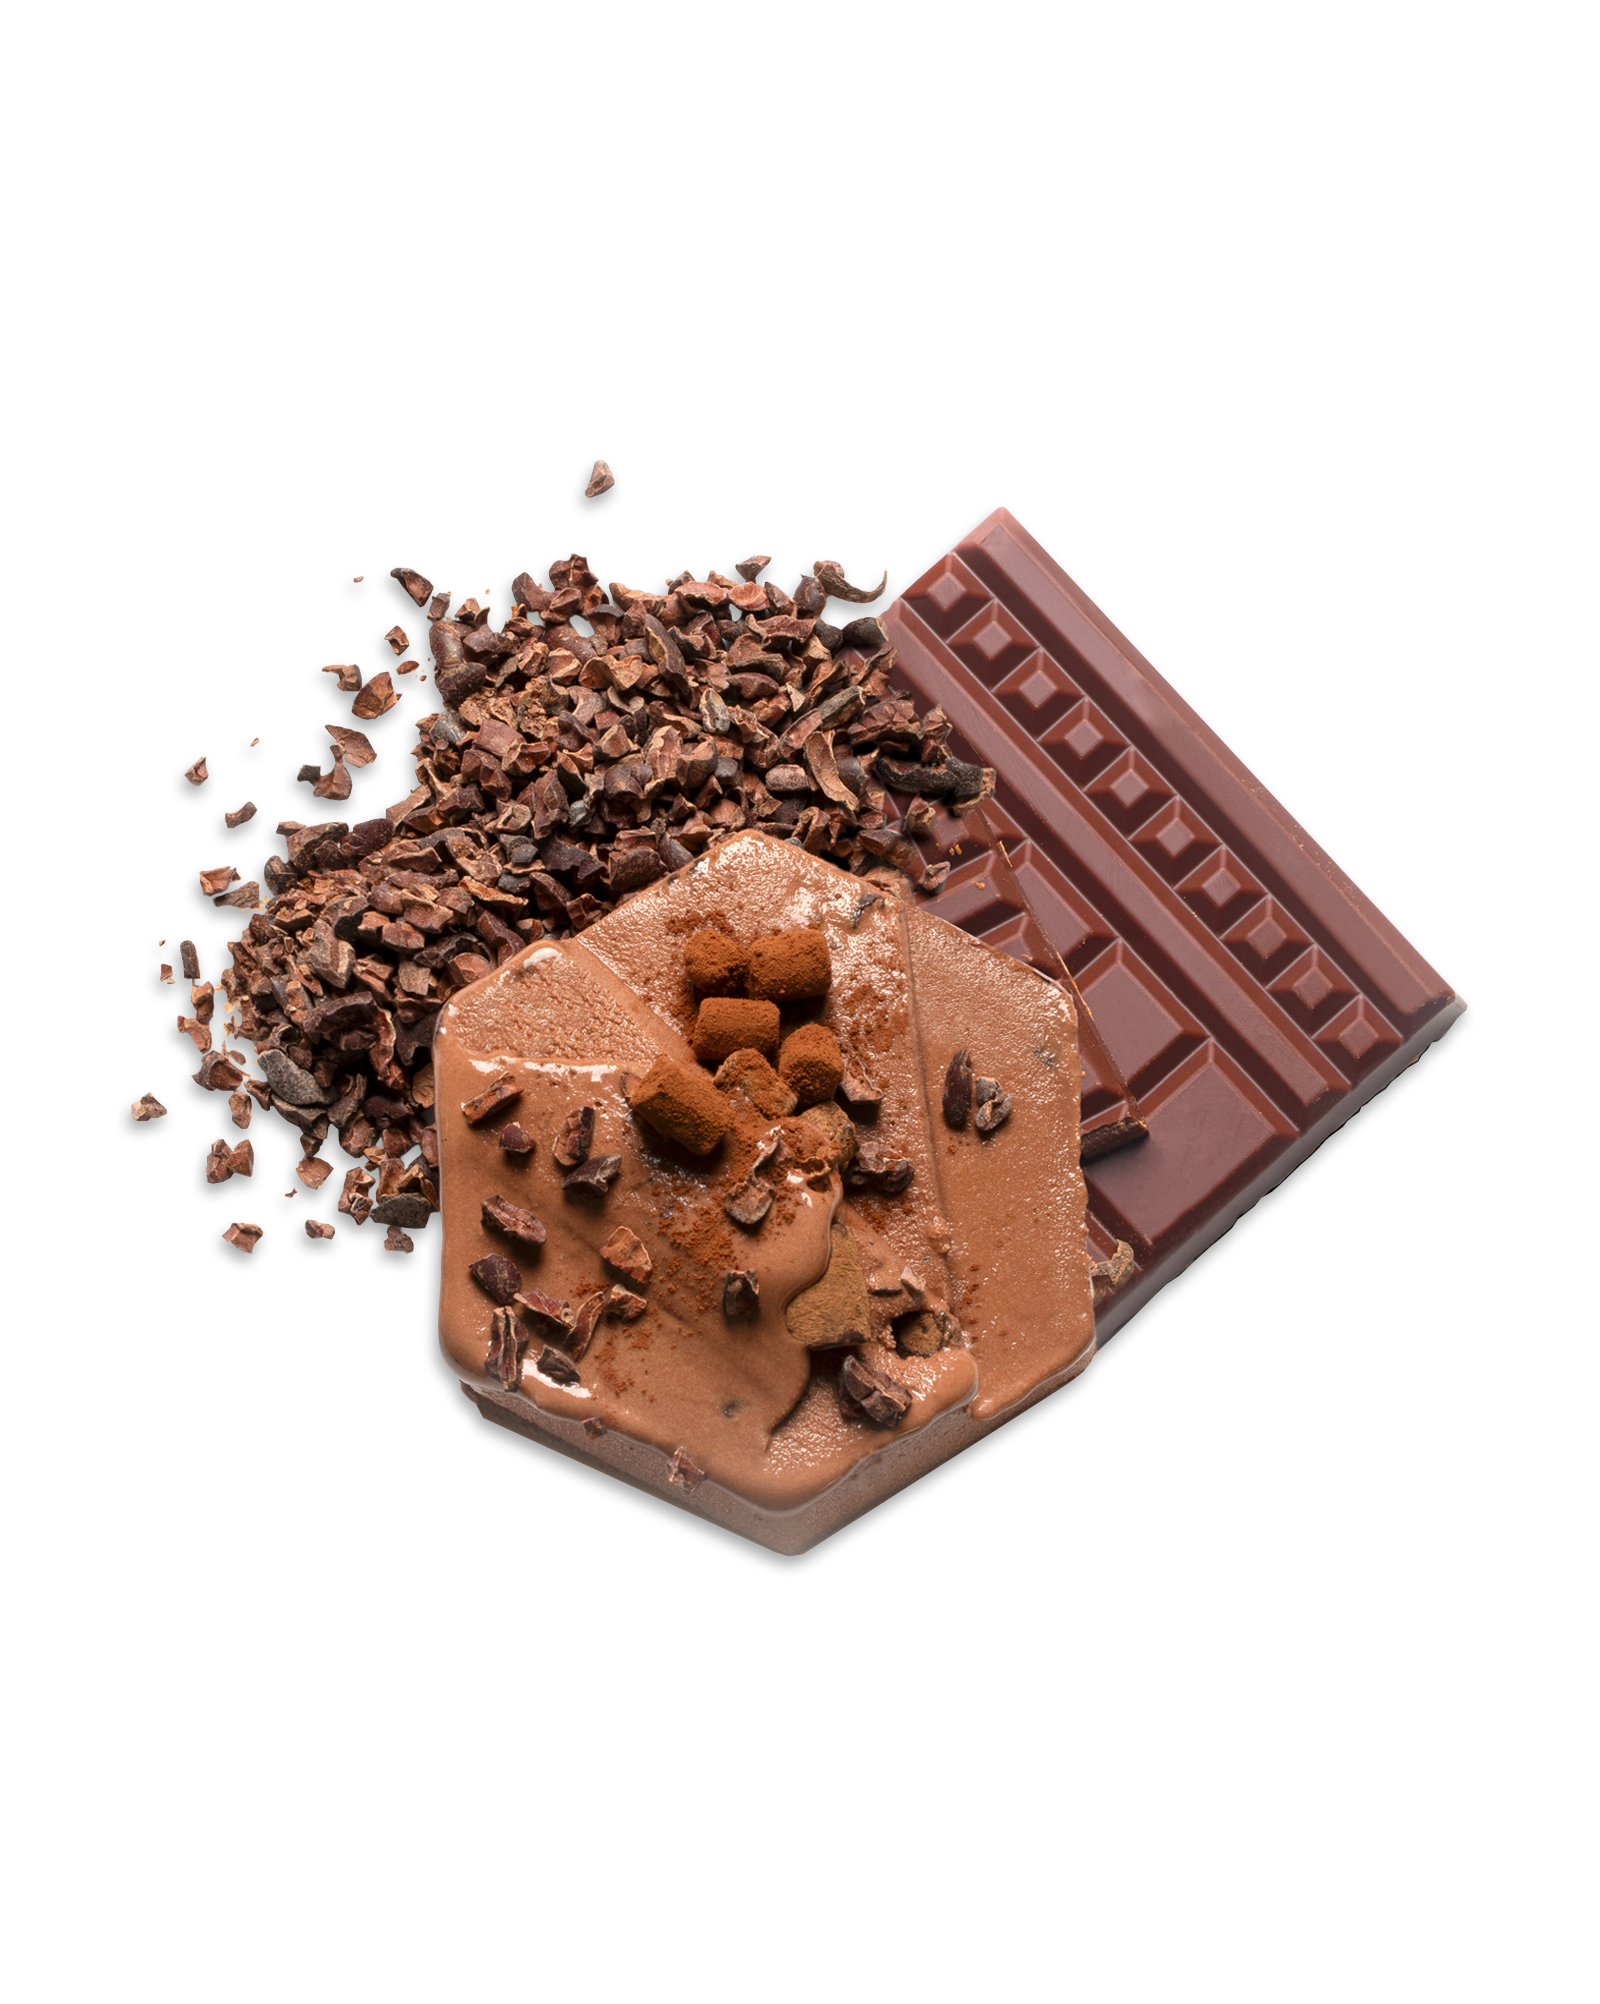 Peruvian chocolate gelato